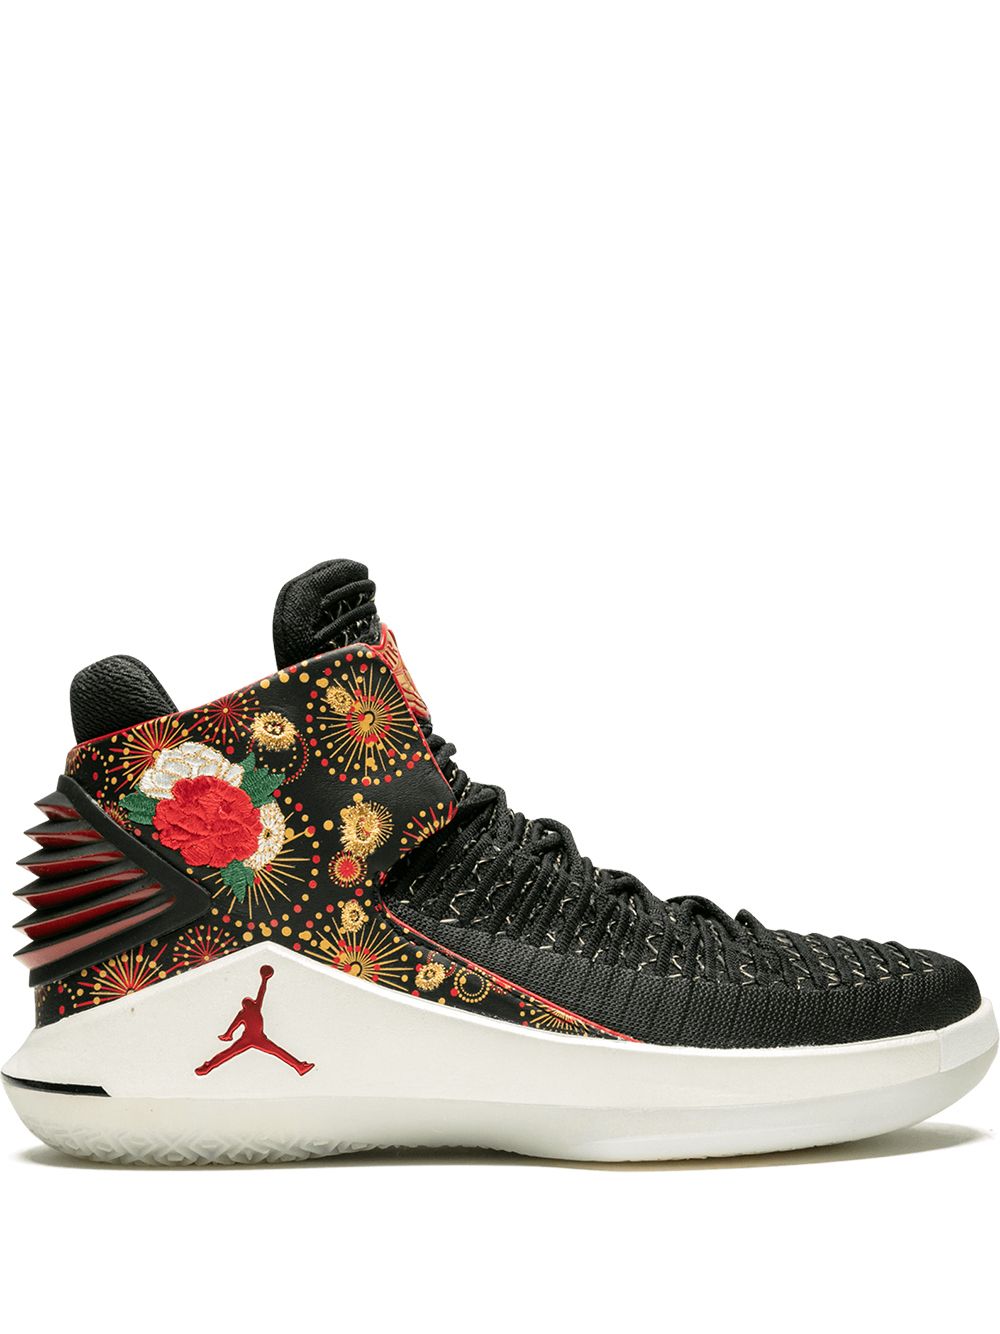 Jordan Air Jordan XXXII sneakers - Black